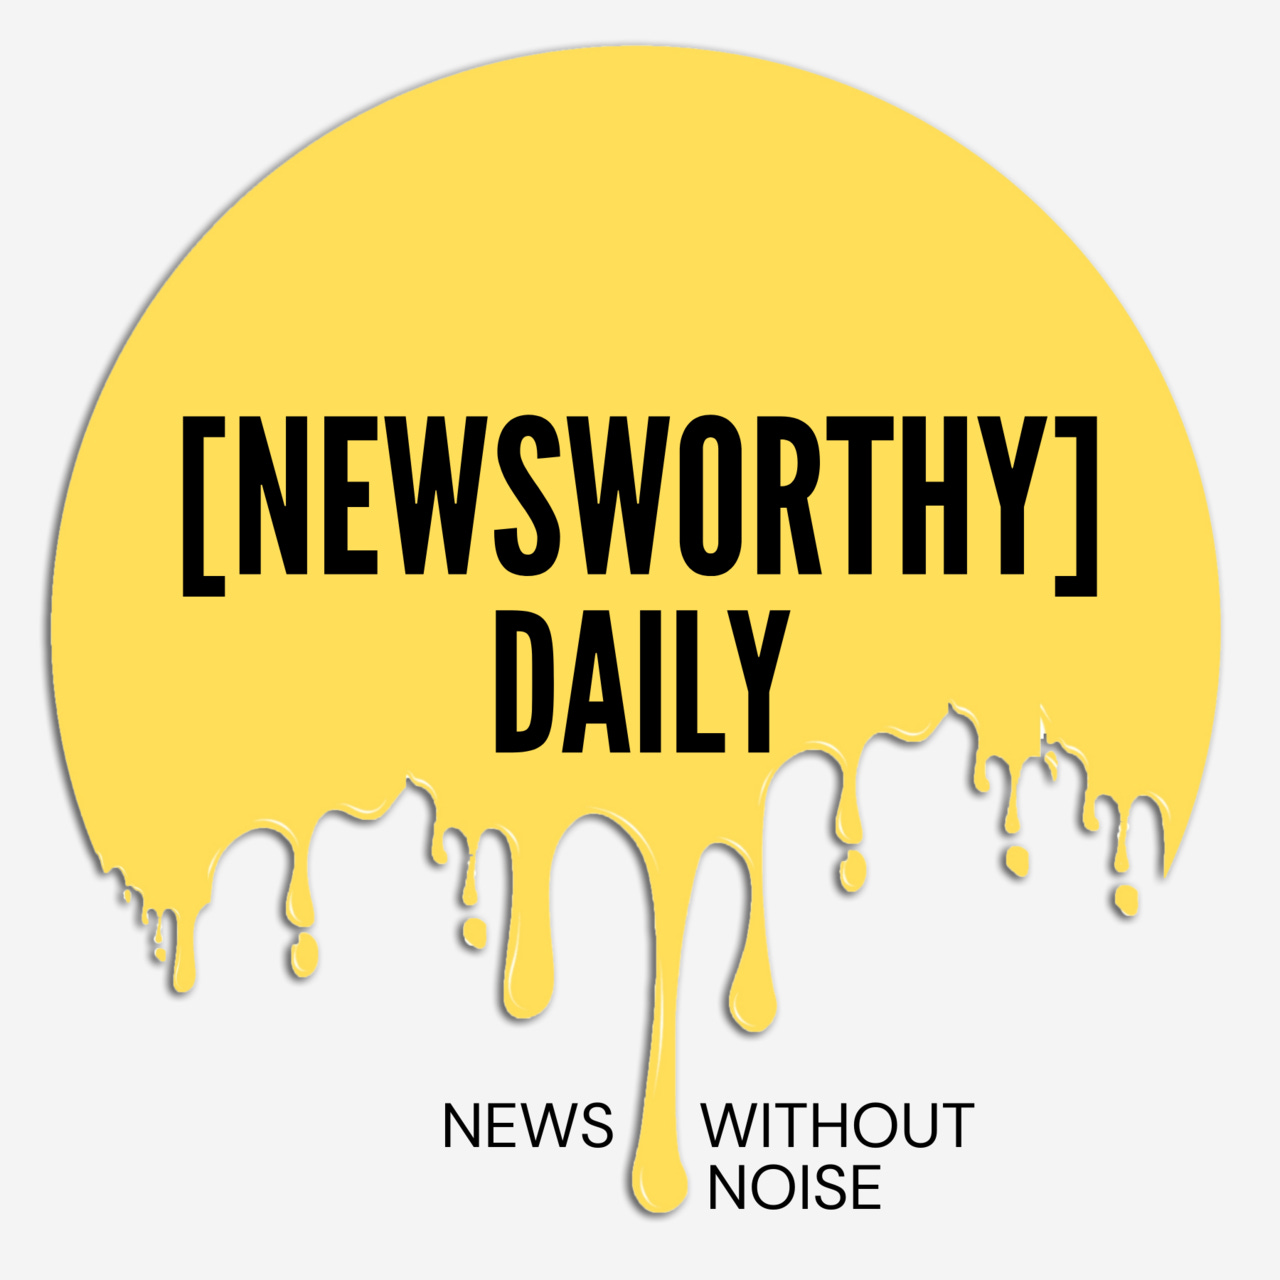 Newsworthy Daily